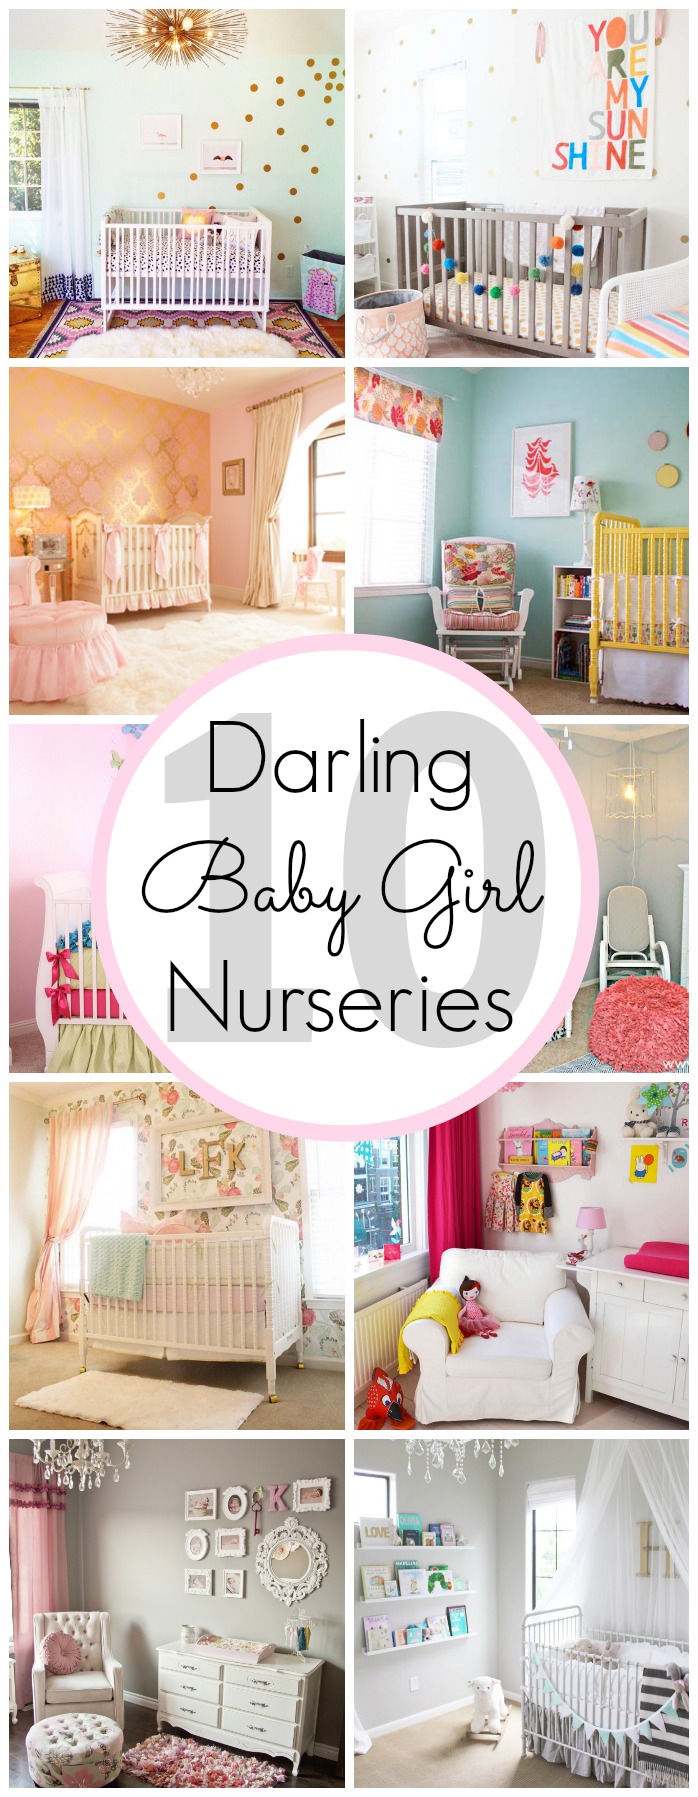 10 Baby Girl Nursery Ideas